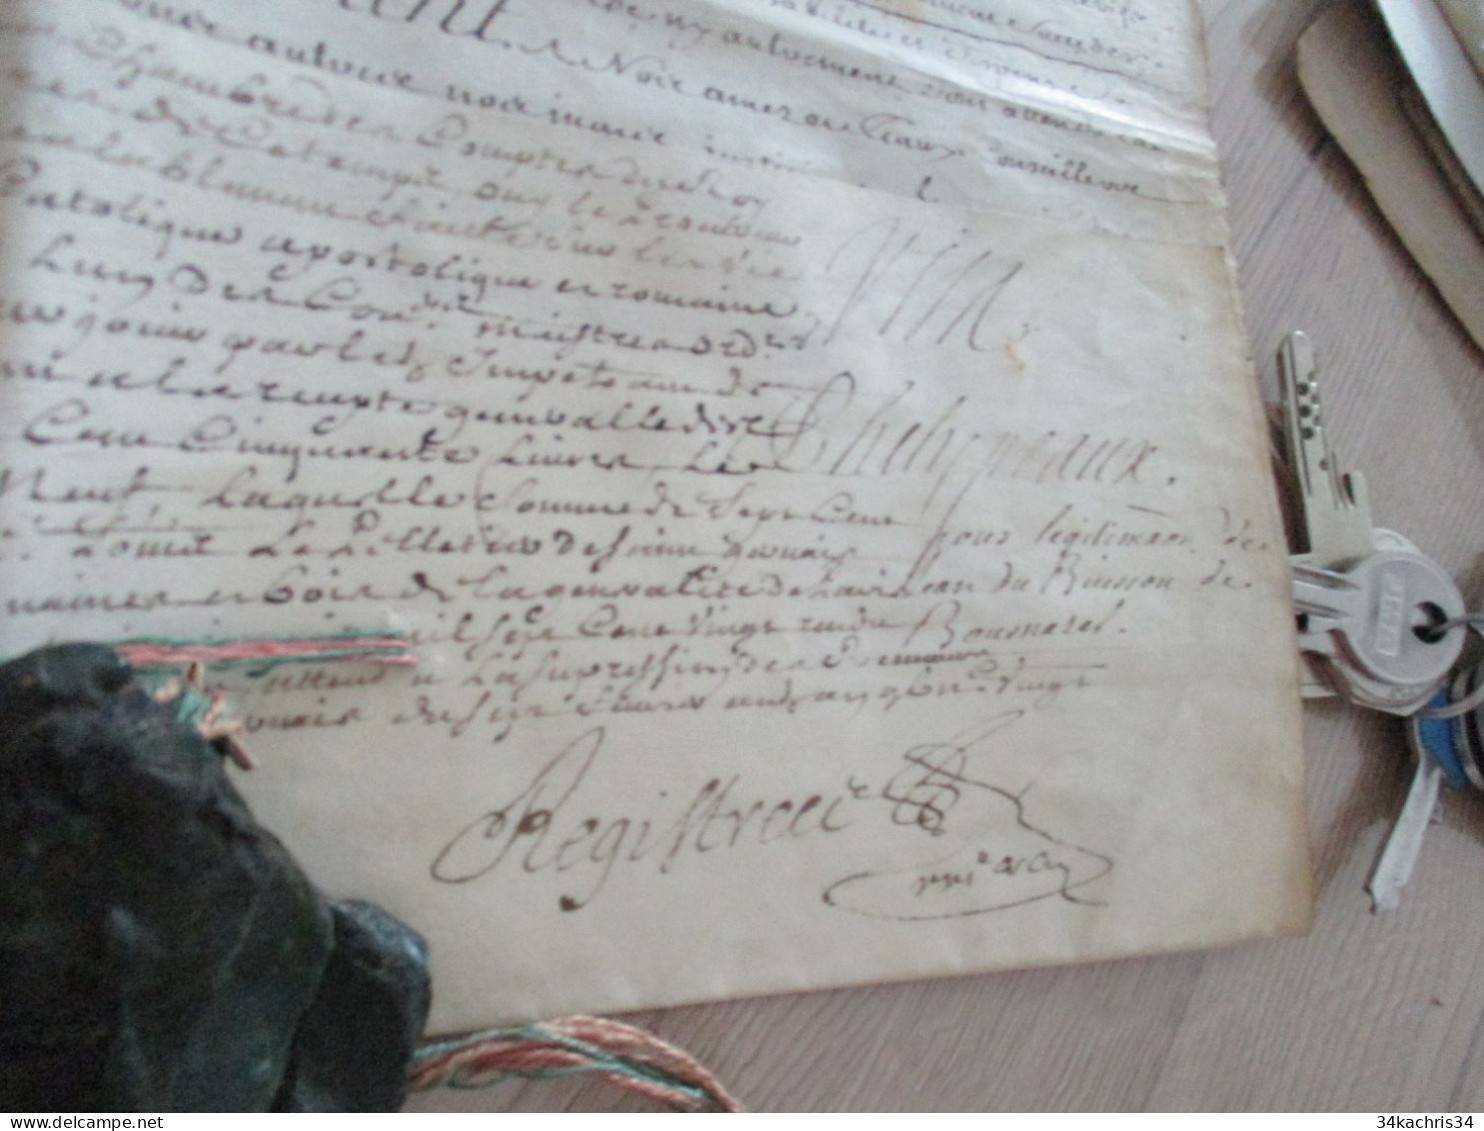 M45 Légitimation sur velin signé Louis XIV 1714 Carpot Phélipeaux avec sceau partiel J. Dubuisson de Bournazel  Rouergue